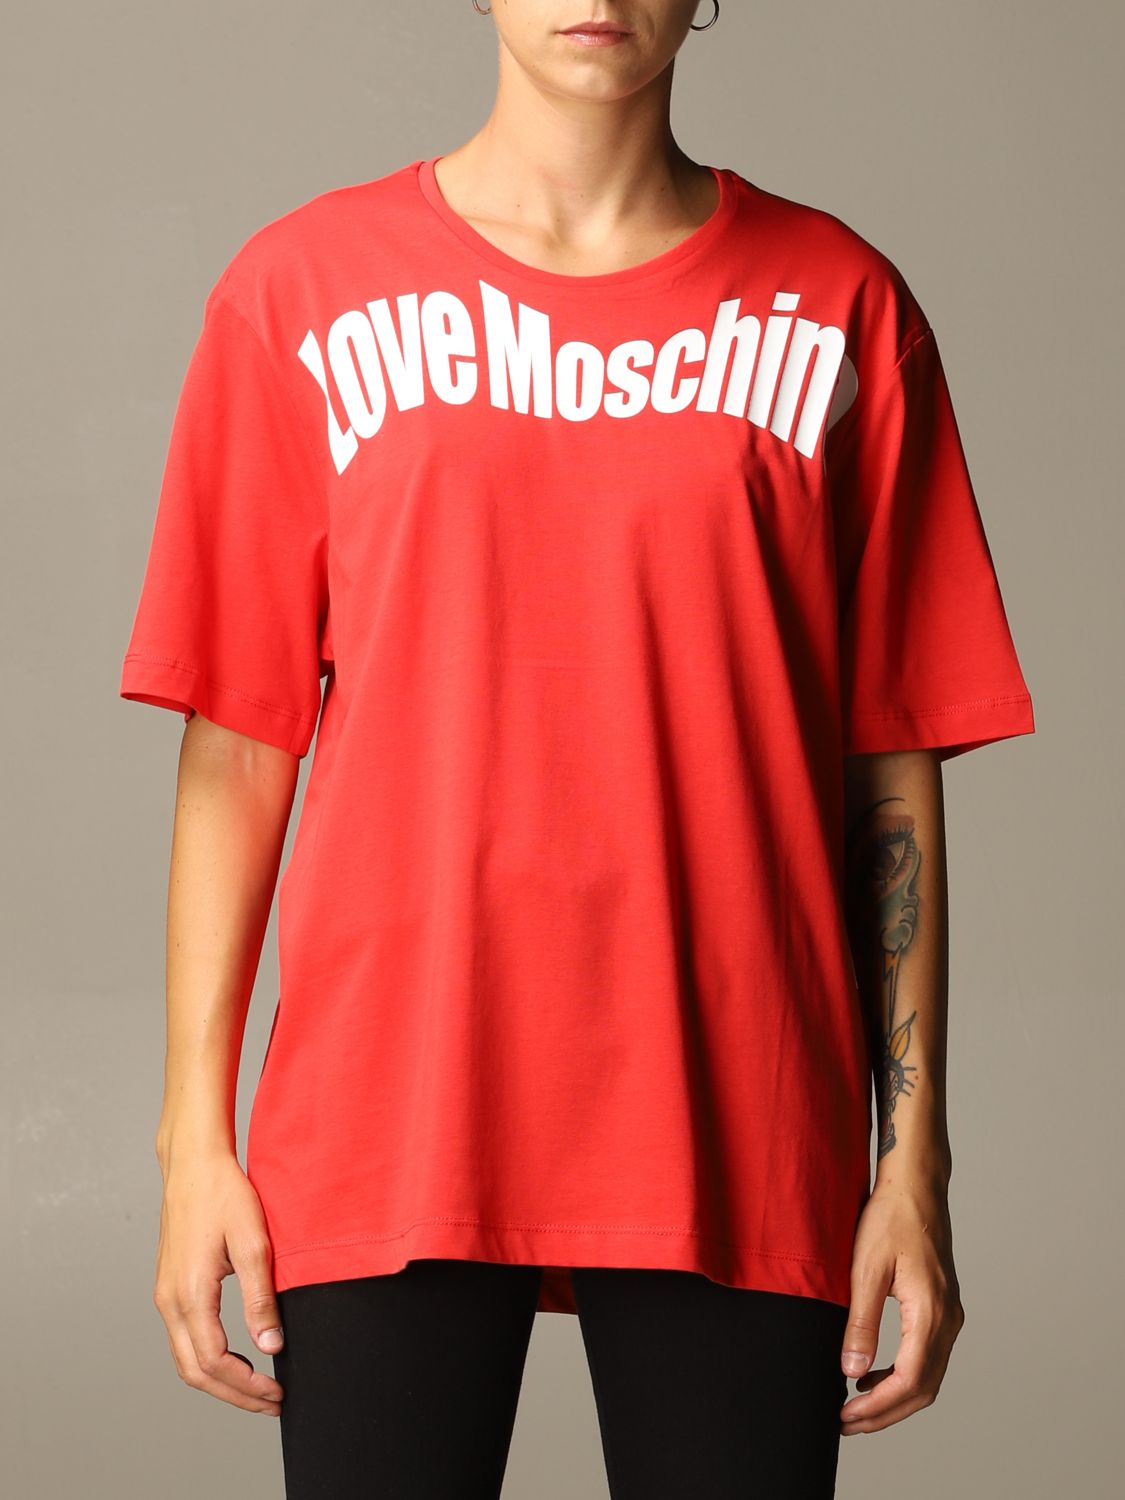 moschino t shirt red